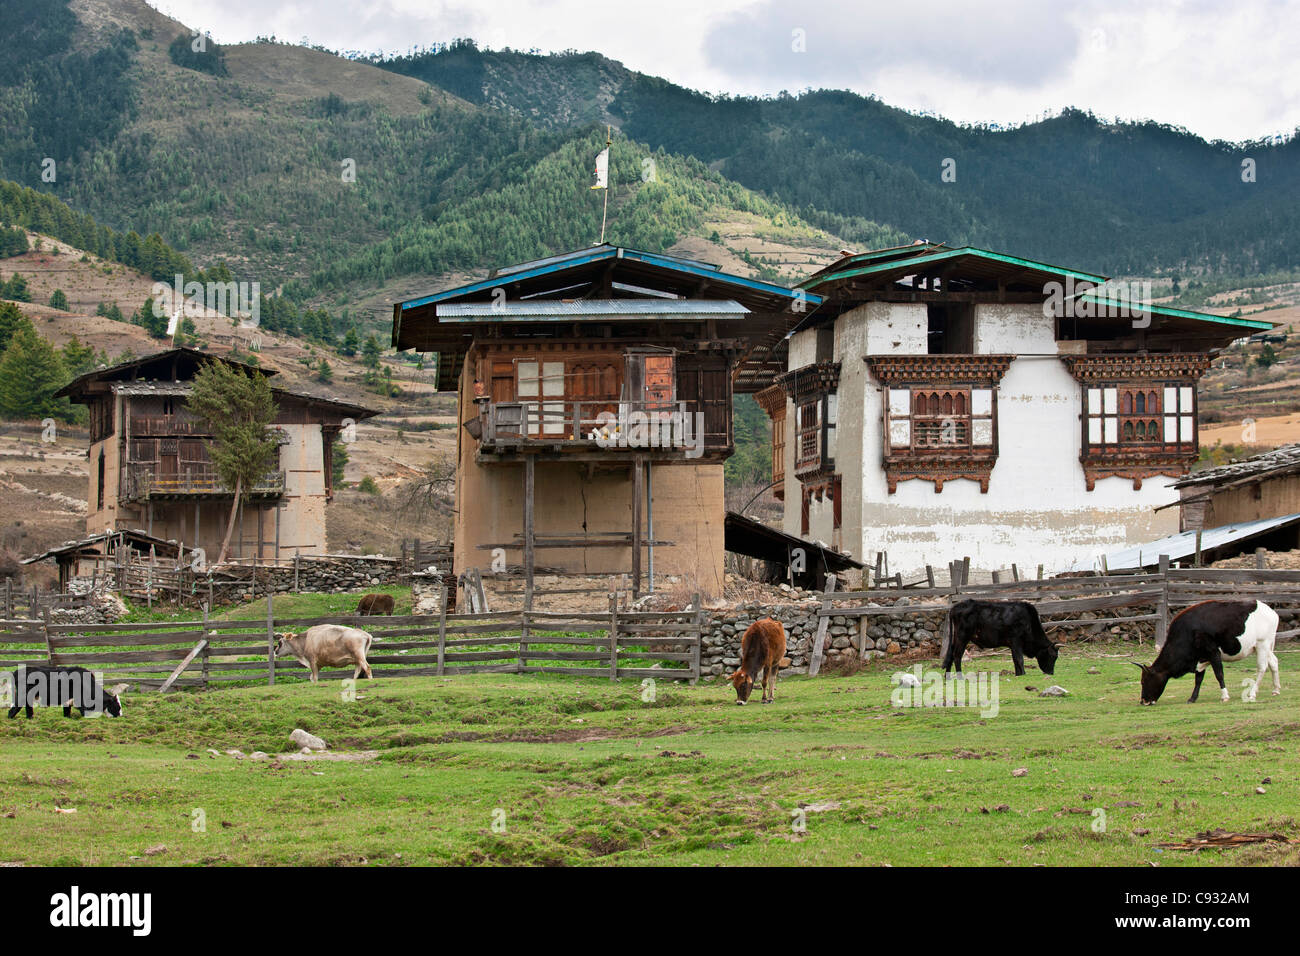 Ein Bauernhof mit typischen bhutanischen anmutenden Bauernhäuser im fruchtbaren Phobjikha Tal. Stockfoto